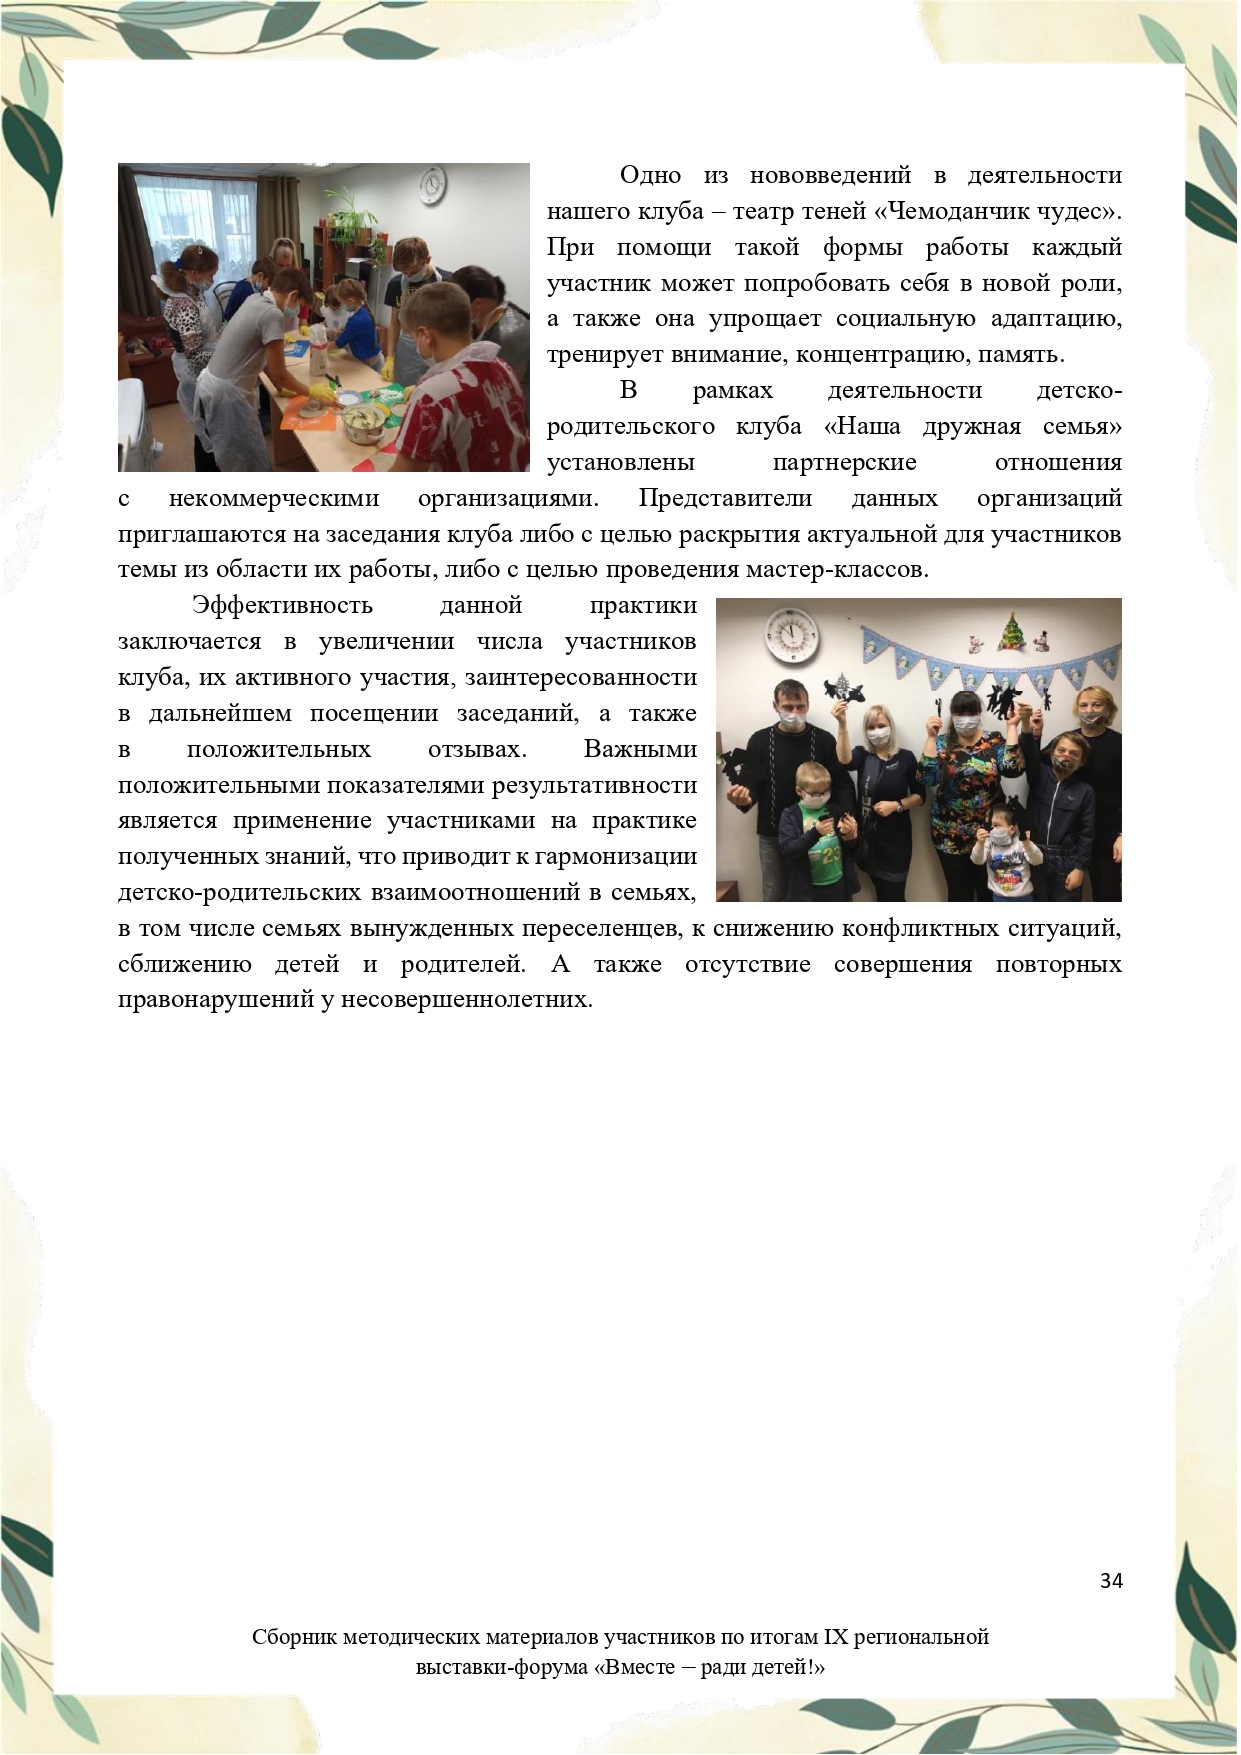 Sbornik_metodicheskikh_materialov_uchastnikov_IX_regionalnoy_vystavki-foruma_Vmeste__radi_detey_33__2023_page-0034